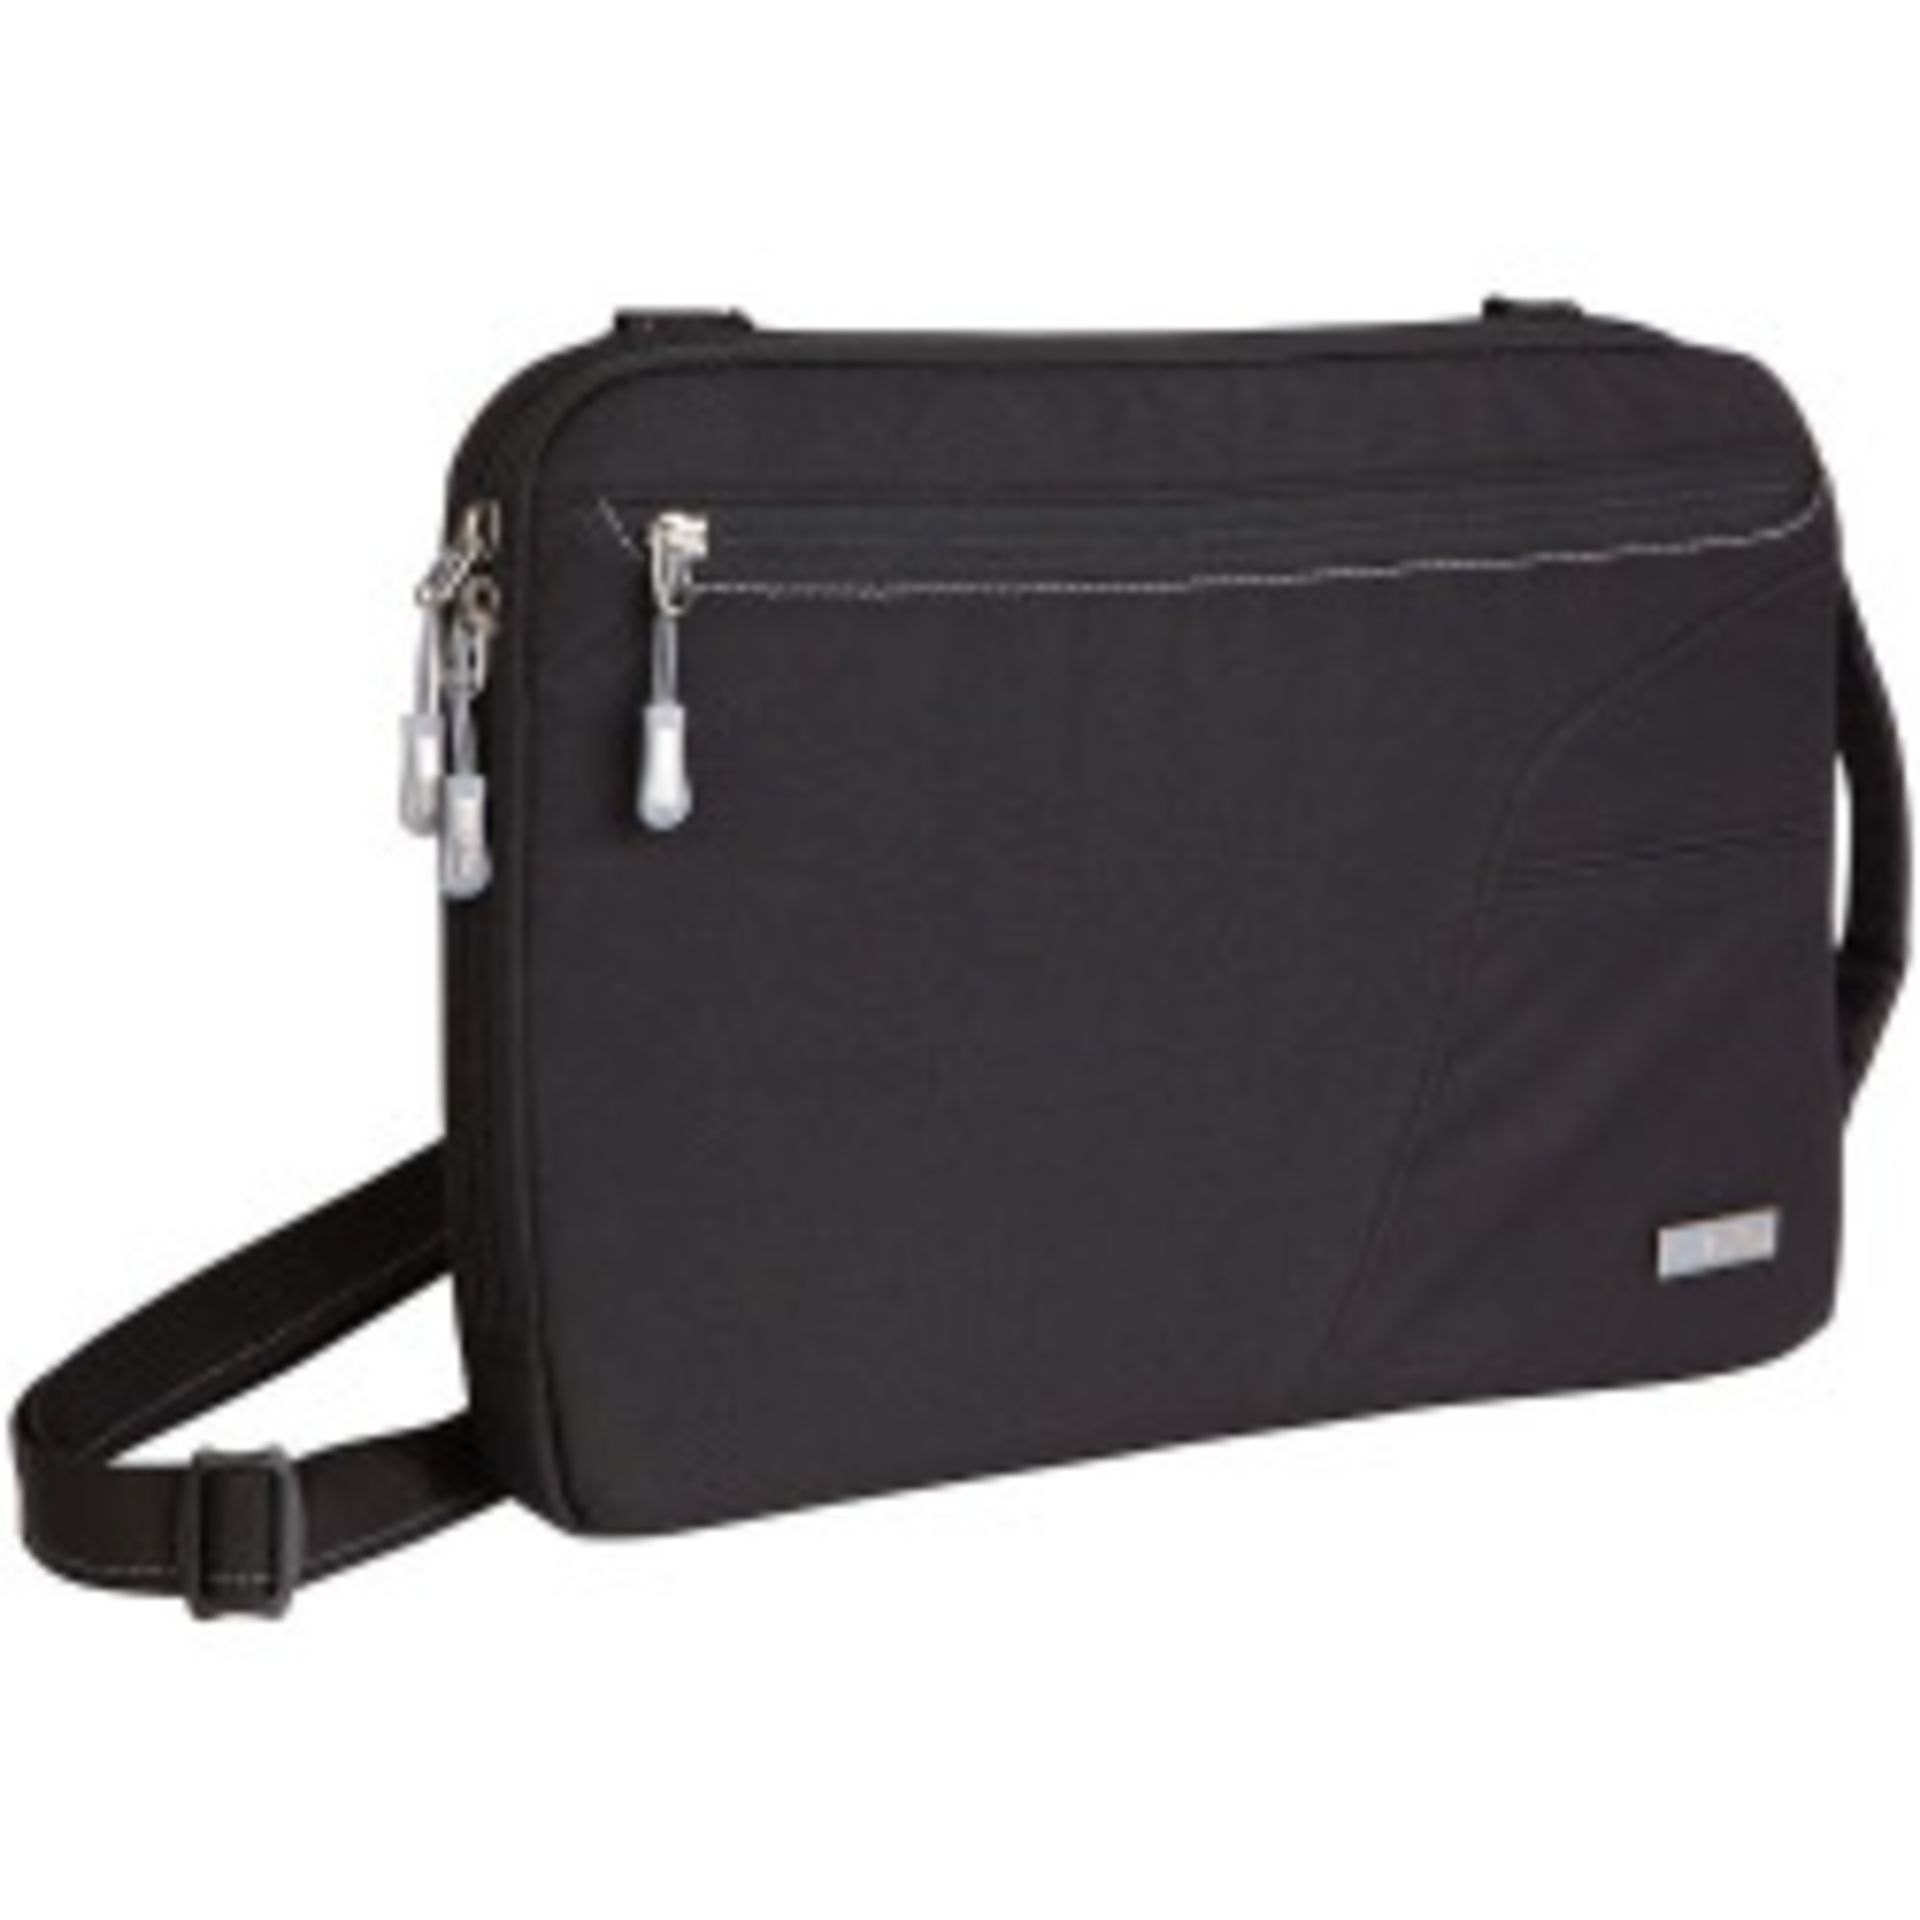 V Brand New STM Blazer Padded Sleeve Bag For Laptops And Tablets 11" Black With Removable Shoulder